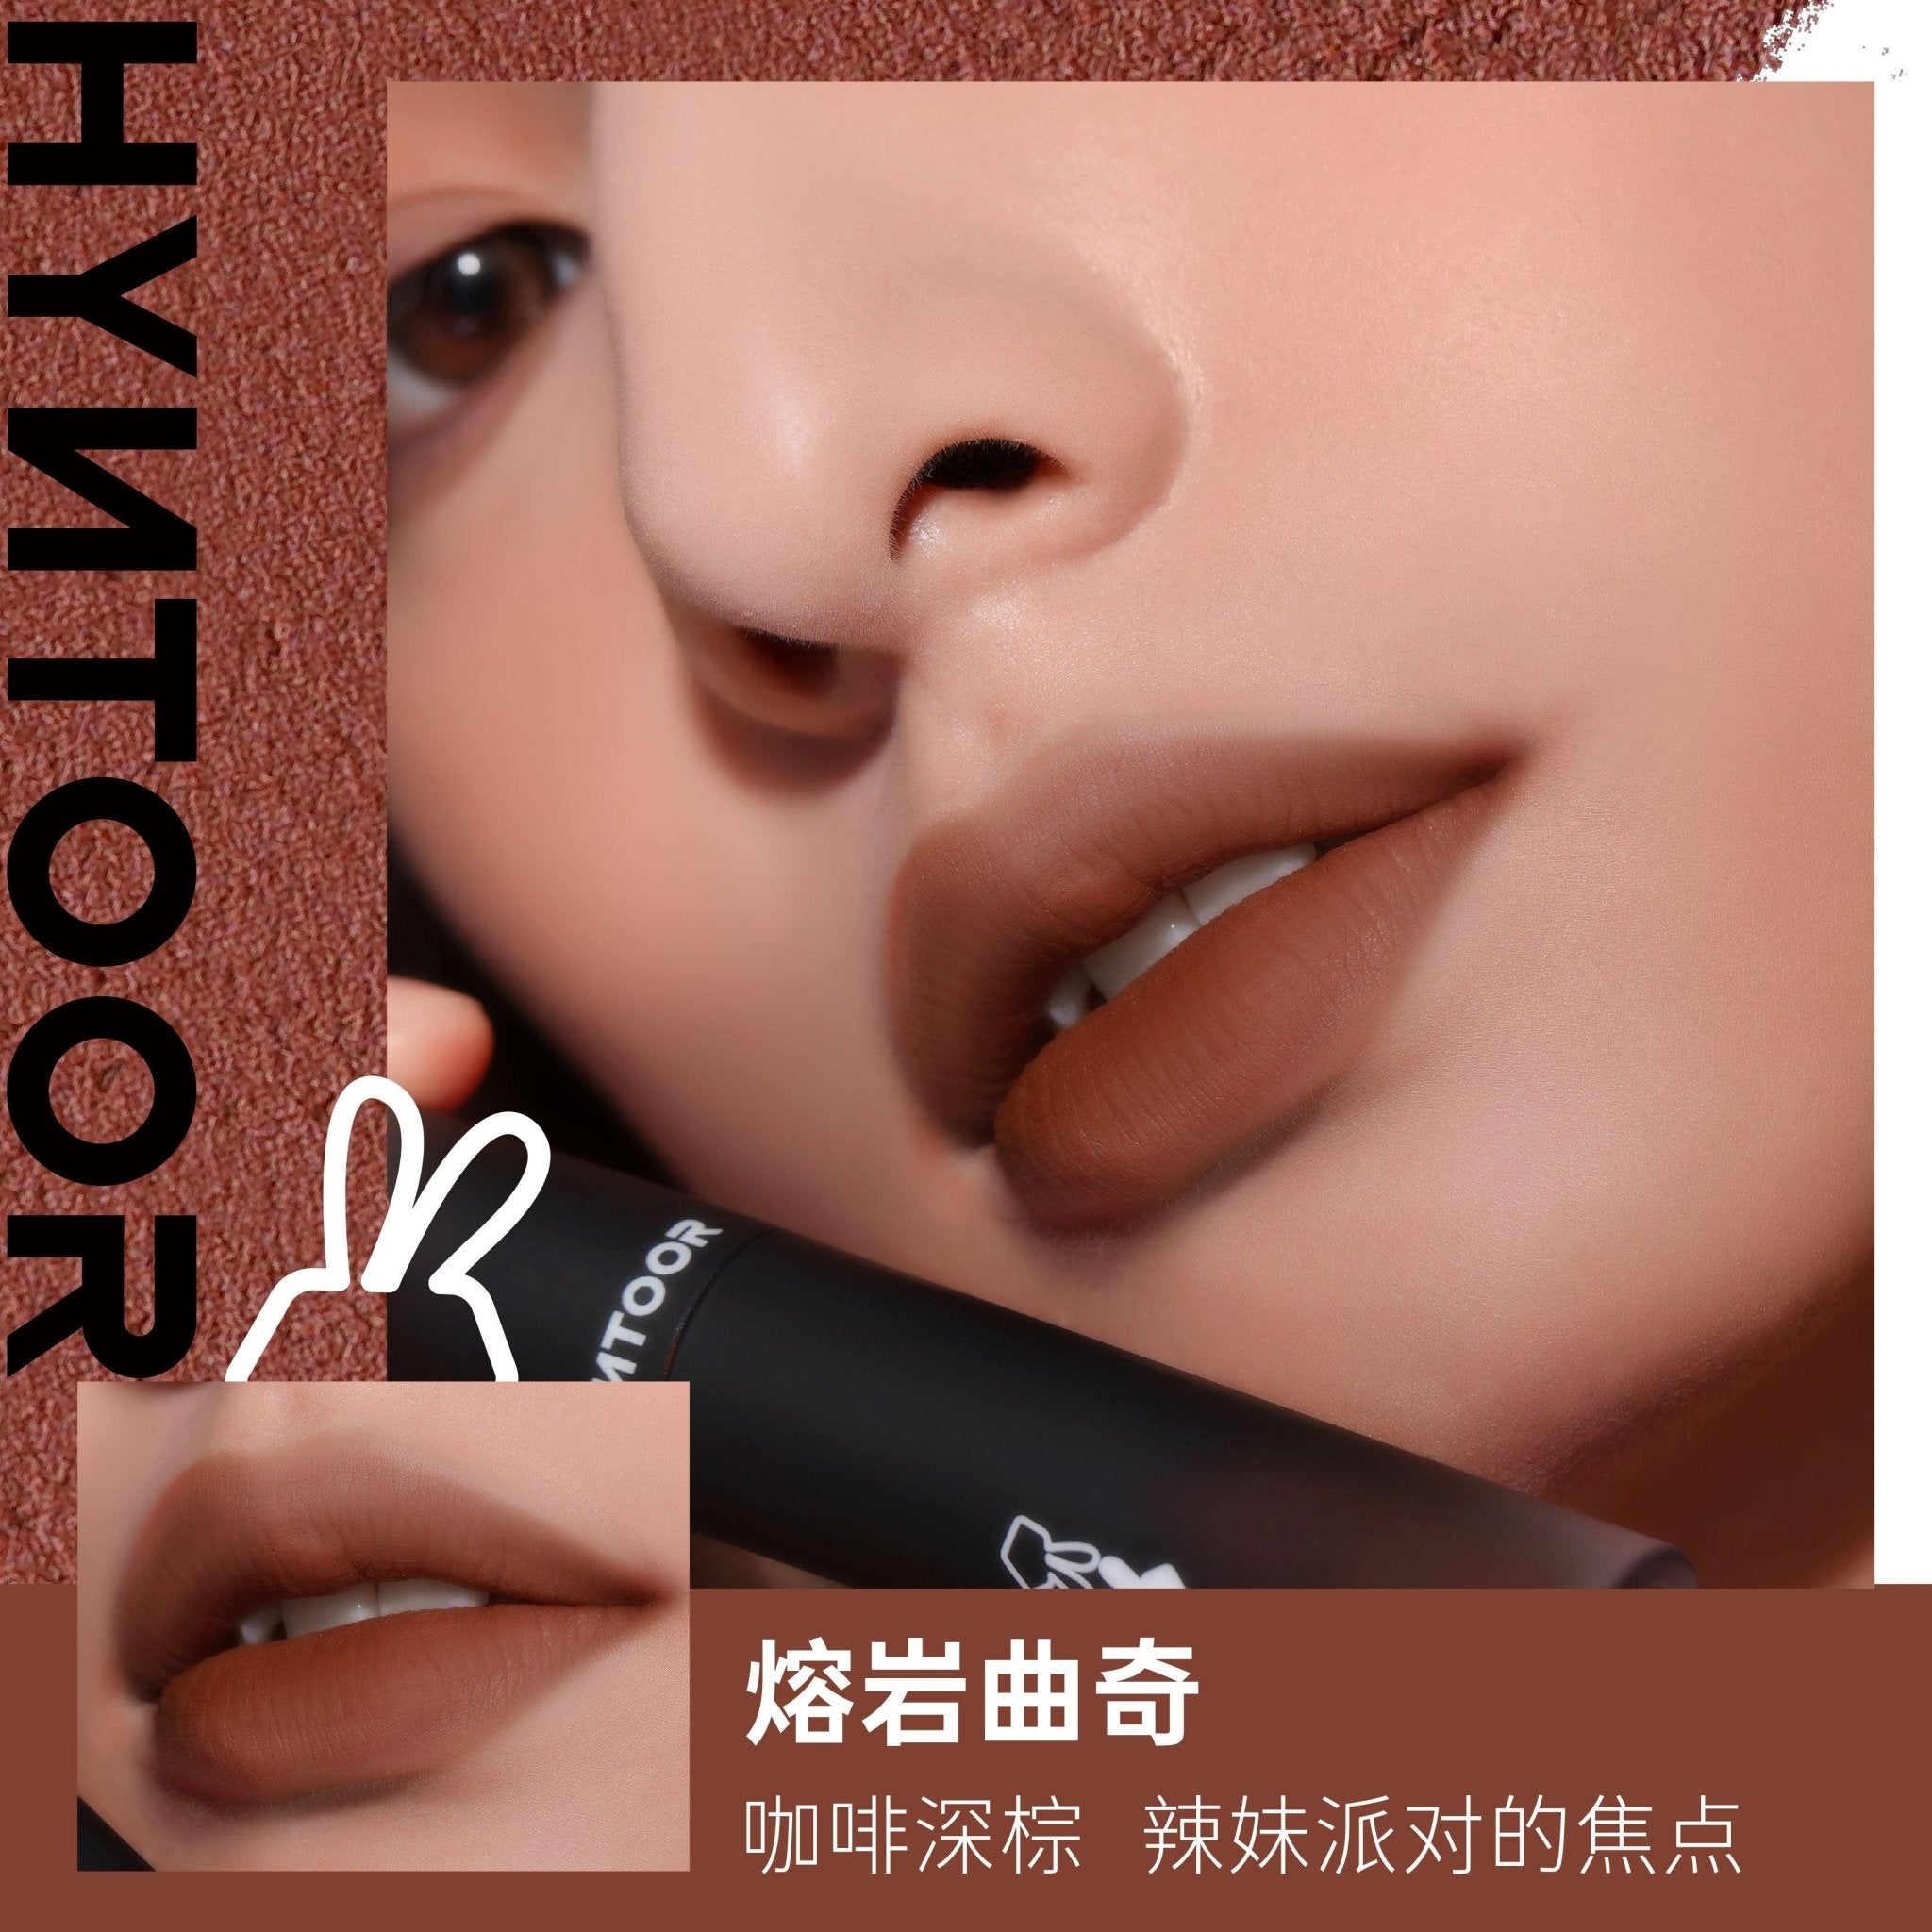 【NEW】HYNTOOR Vintage Cheek and Lip Mud HYT003 - Chic Decent